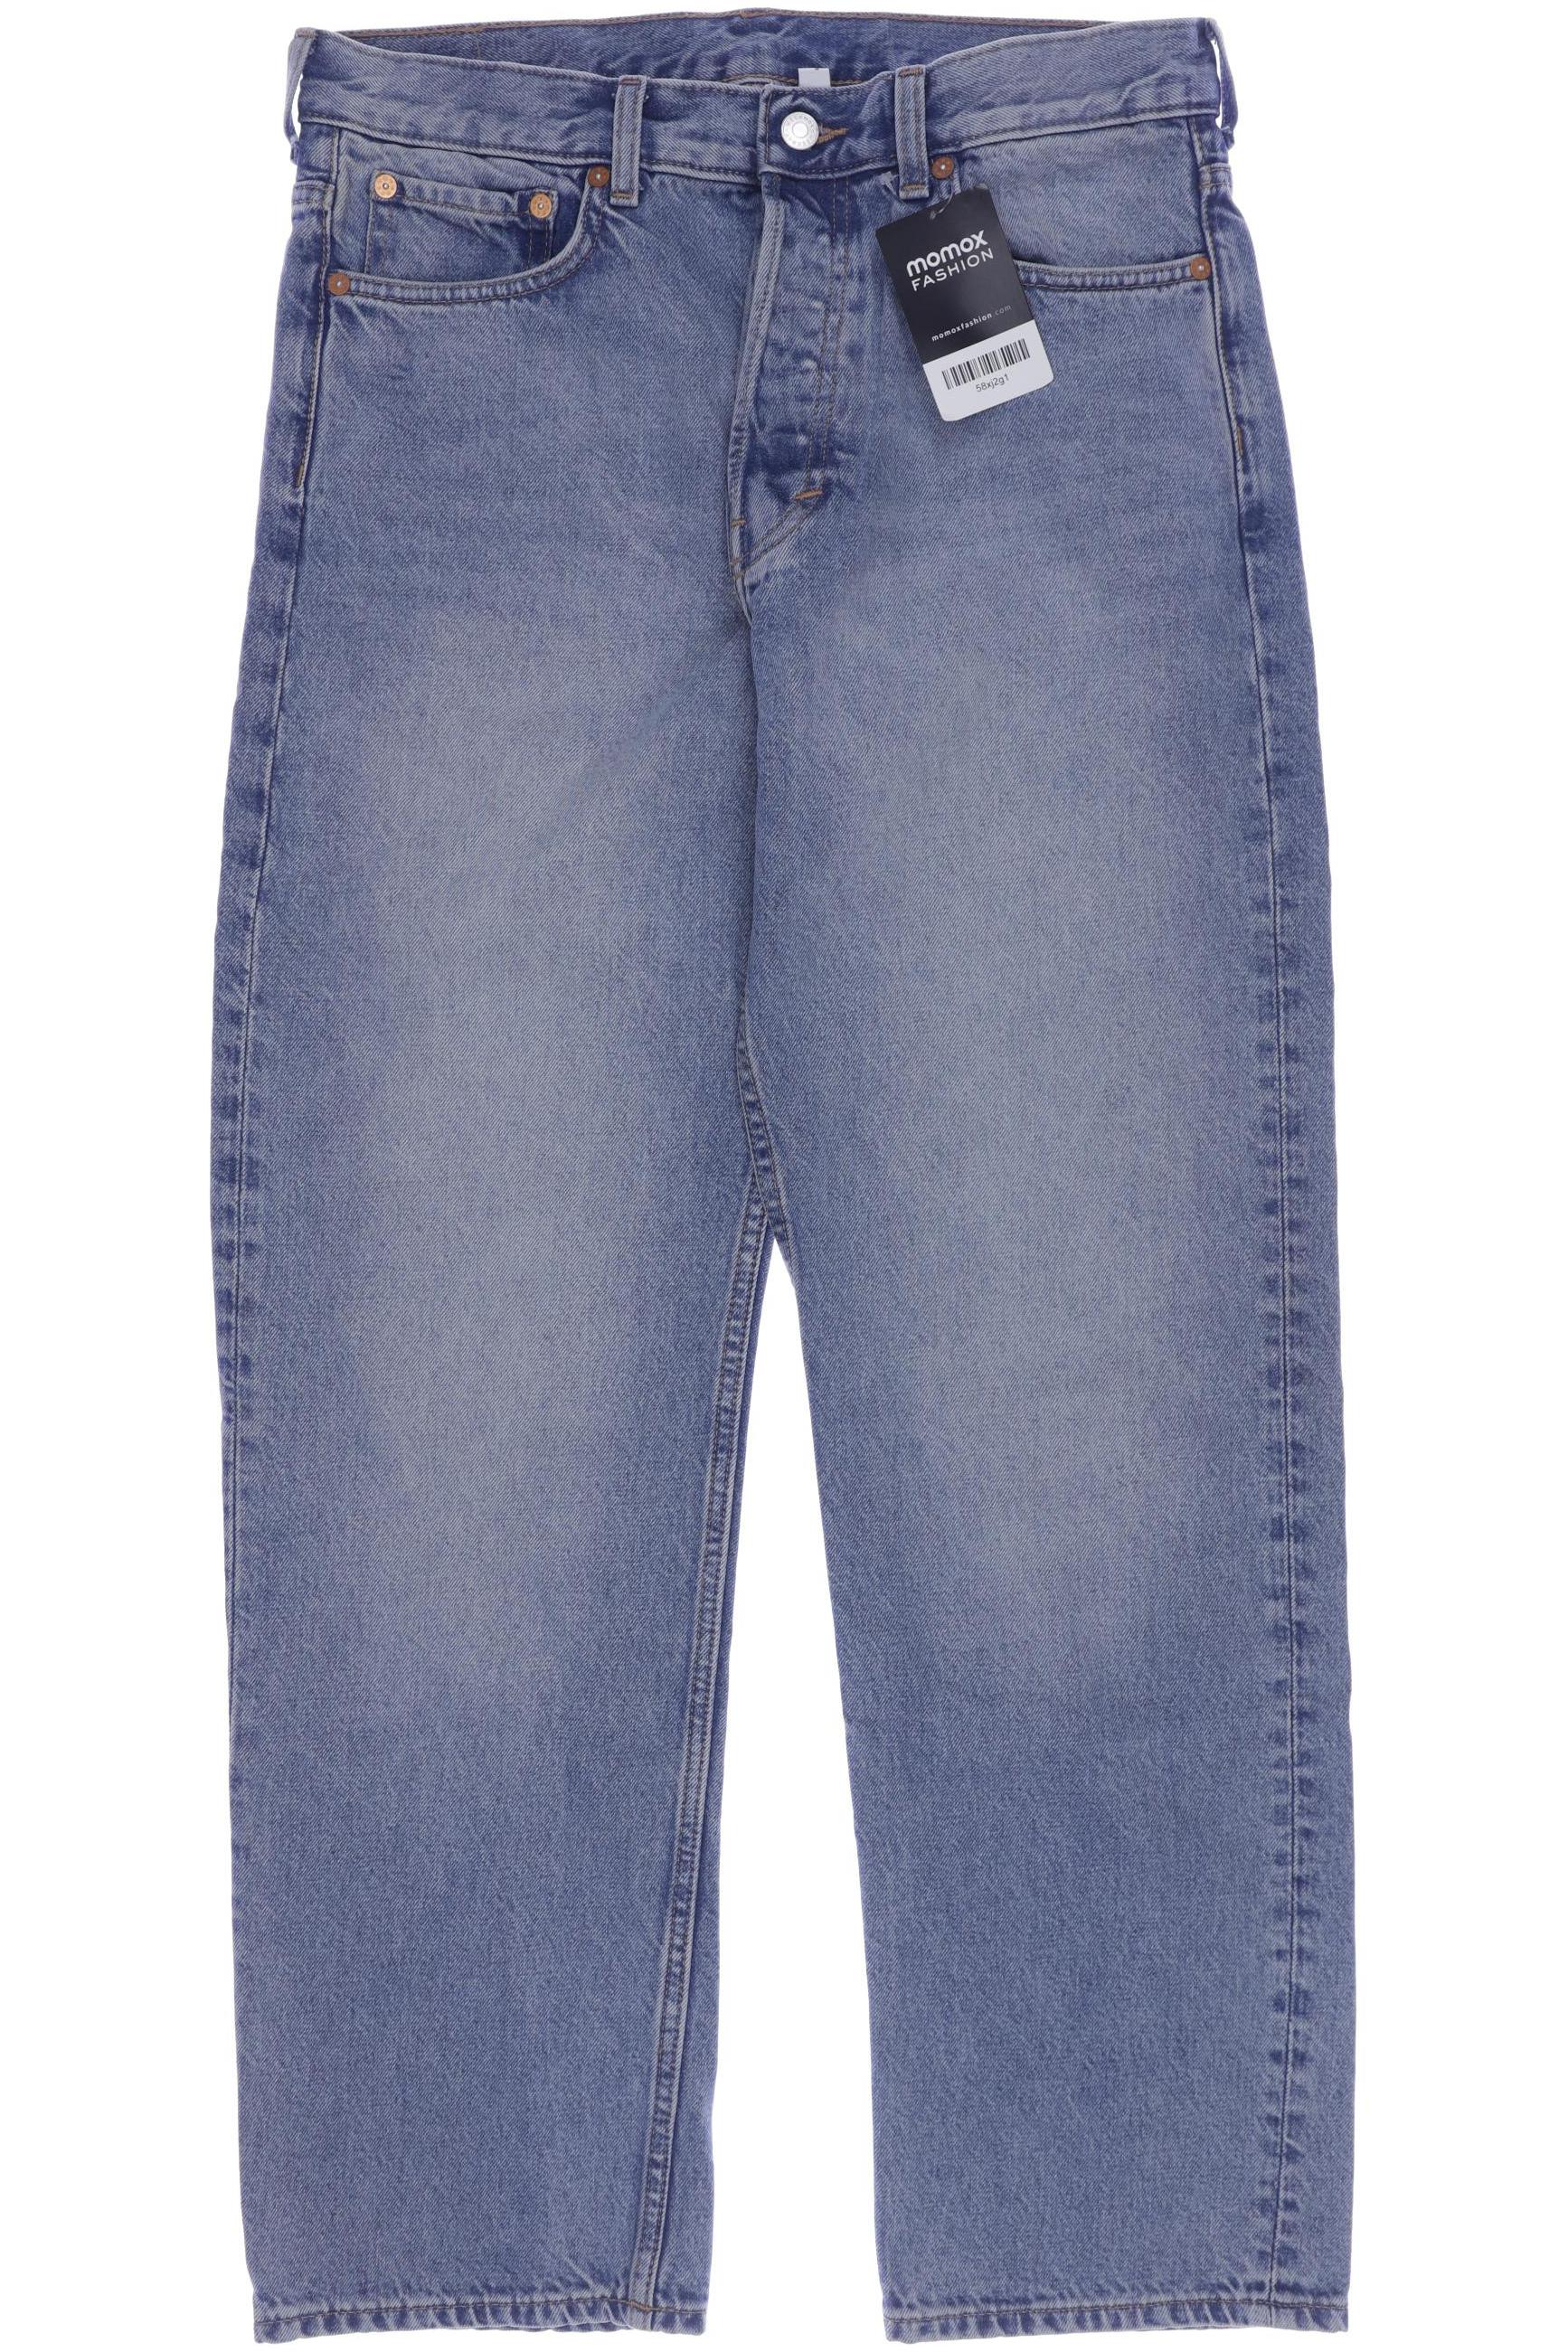 Weekday Herren Jeans, blau, Gr. 46 von Weekday